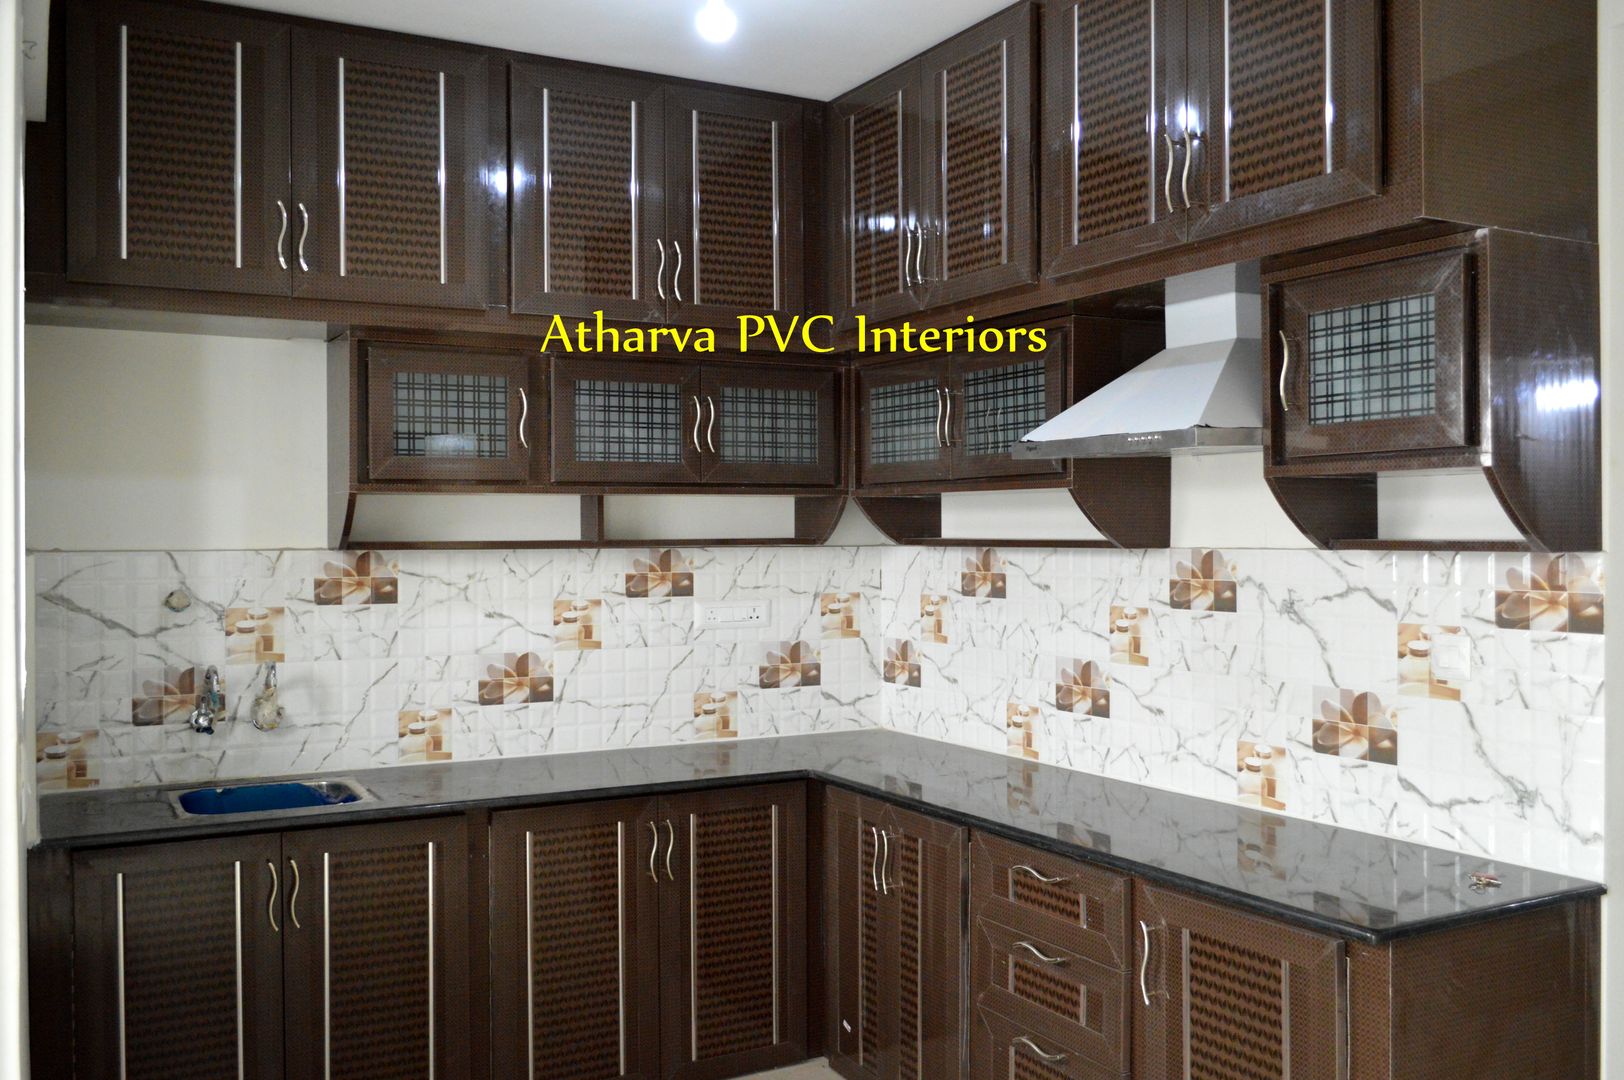 PVC Modular Kitchen cabinets, Atharva PVC Interiors Atharva PVC Interiors Moderne Küchen Plastik Schränke und Regale